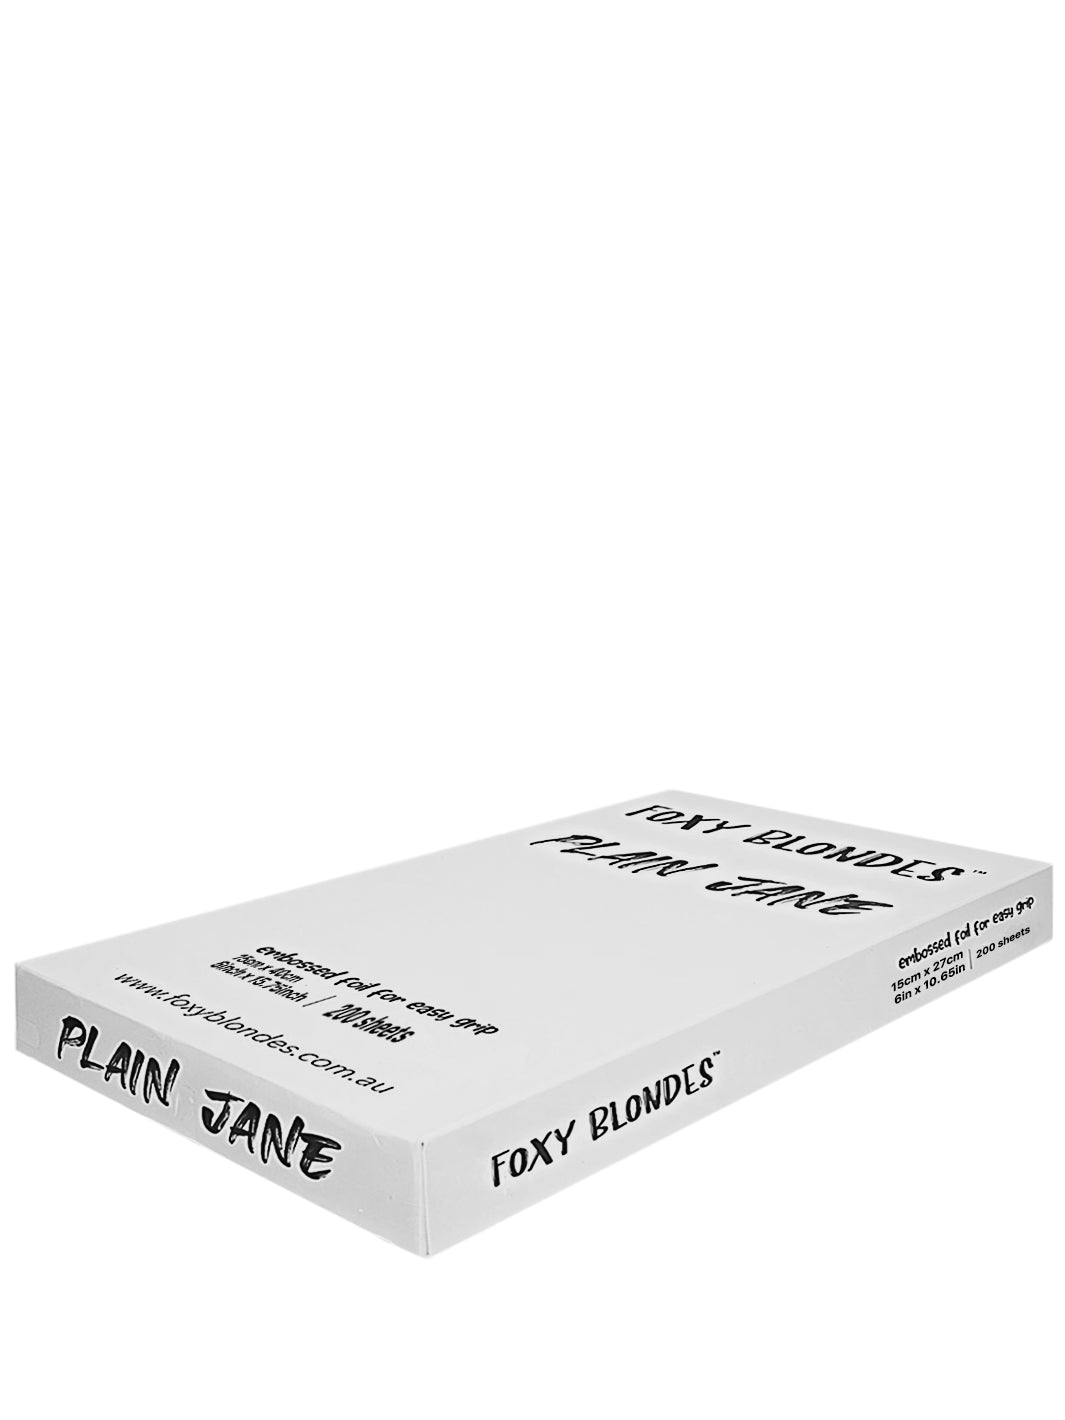 Plain Jane Pre-Cut Foils